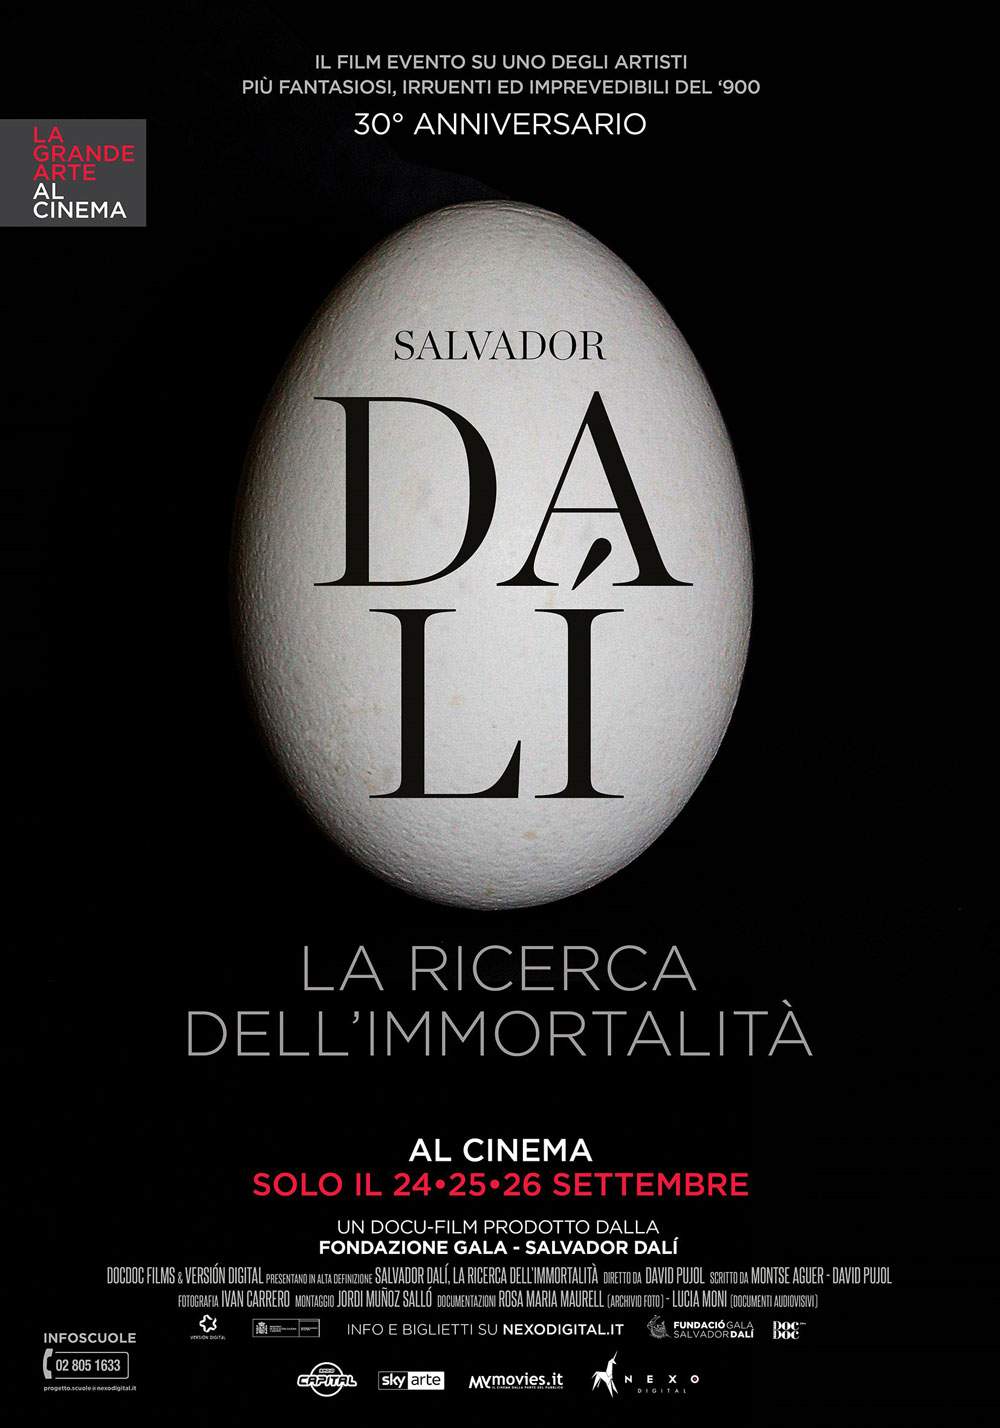 La nouvelle affiche 2018 de La Grande Arte al Cinema s'ouvre sur Dalí